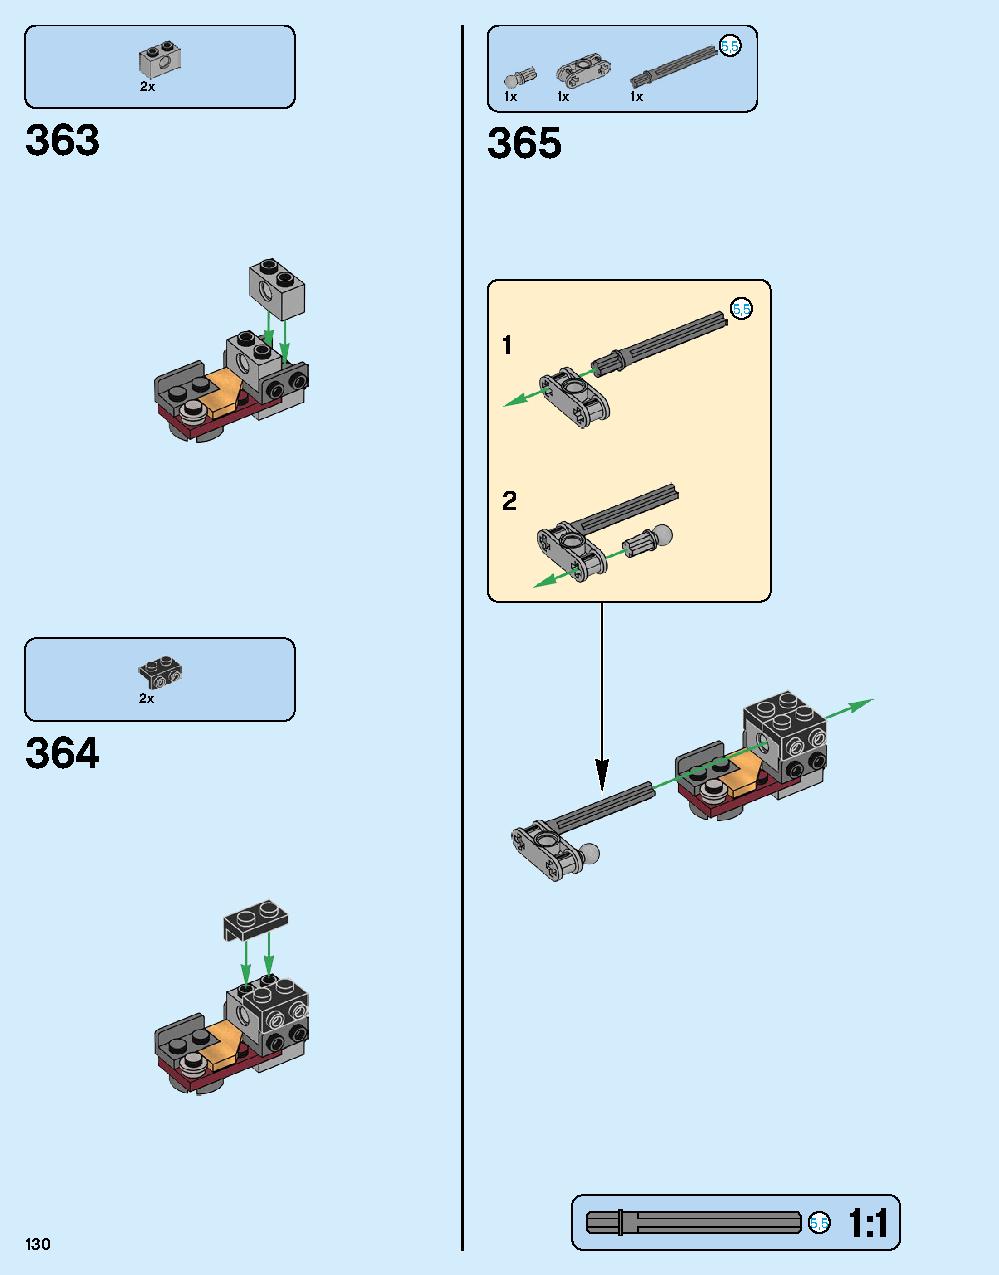 ハルクバスター：ウルトロン・エディション 76105 レゴの商品情報 レゴの説明書・組立方法 130 page